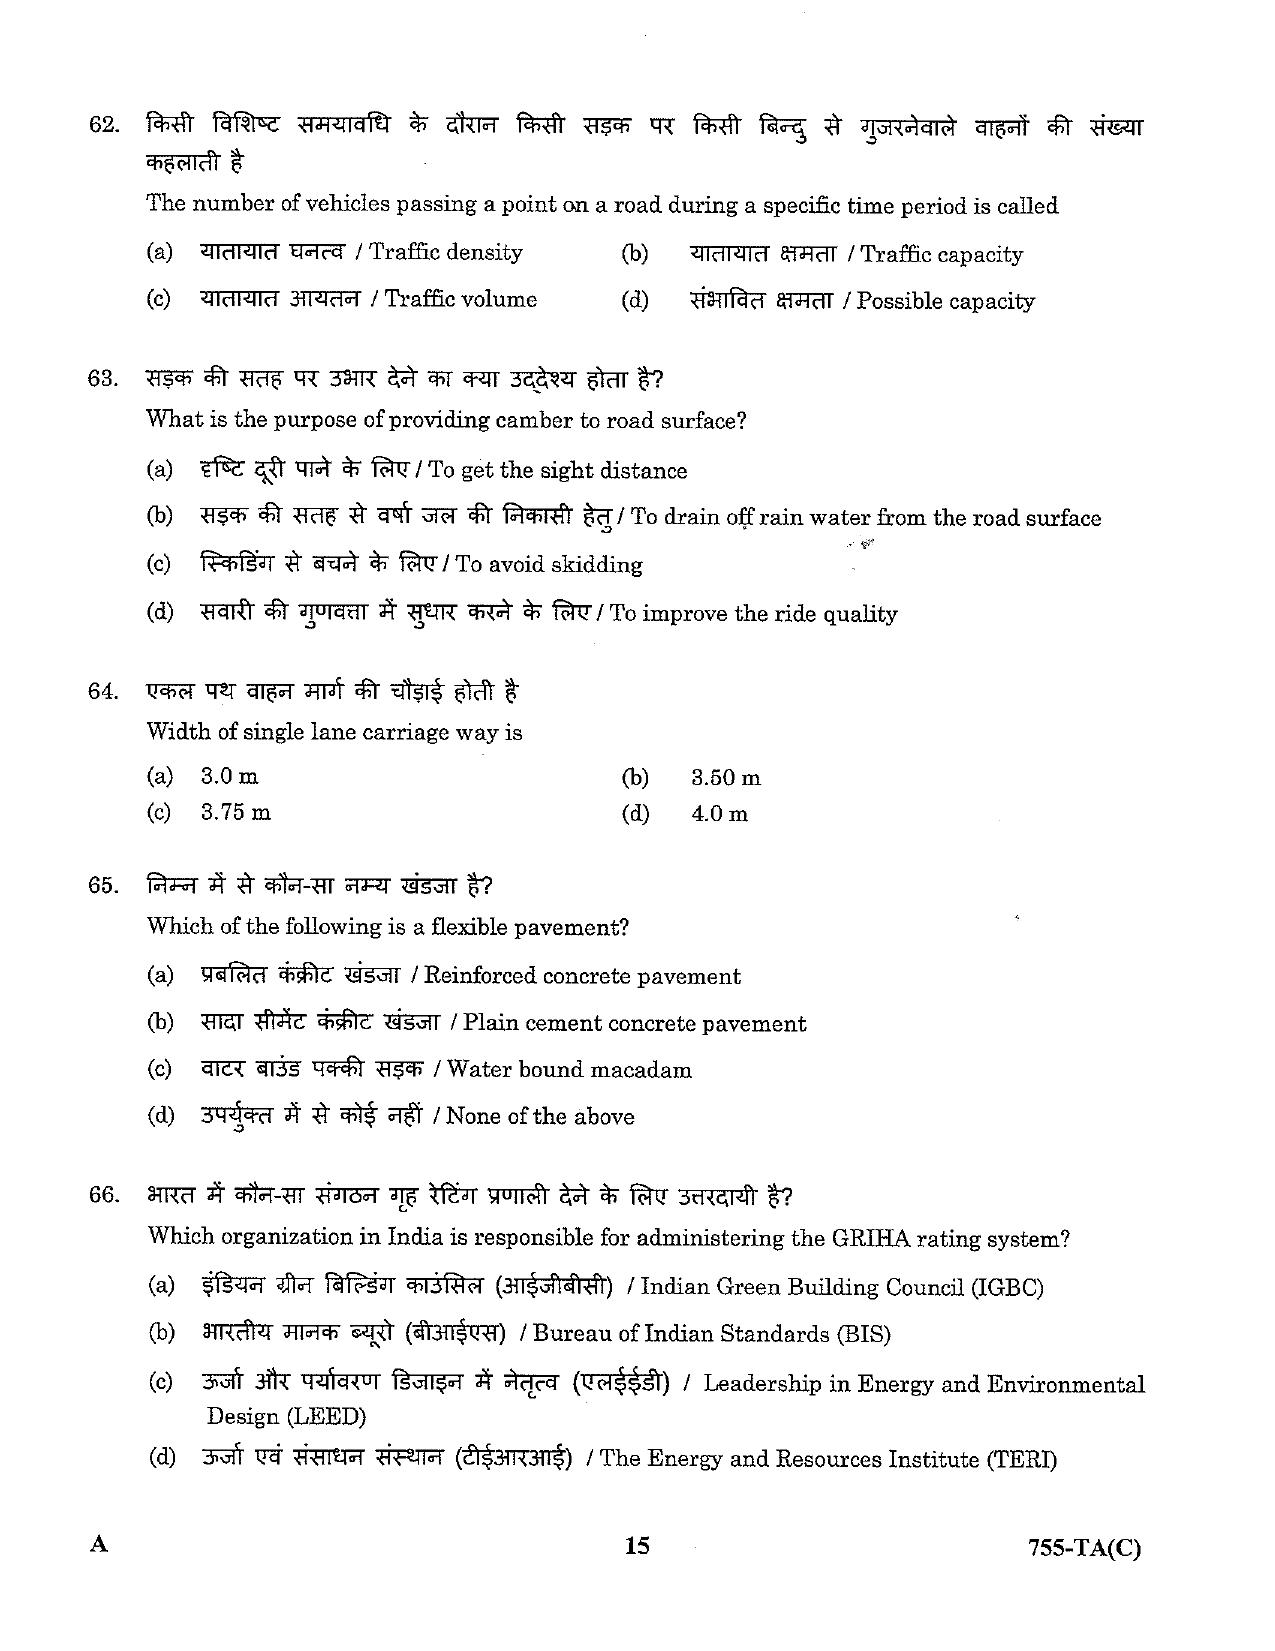 LPSC Technical Assistant (Civil) 2023 Question Paper - Page 15